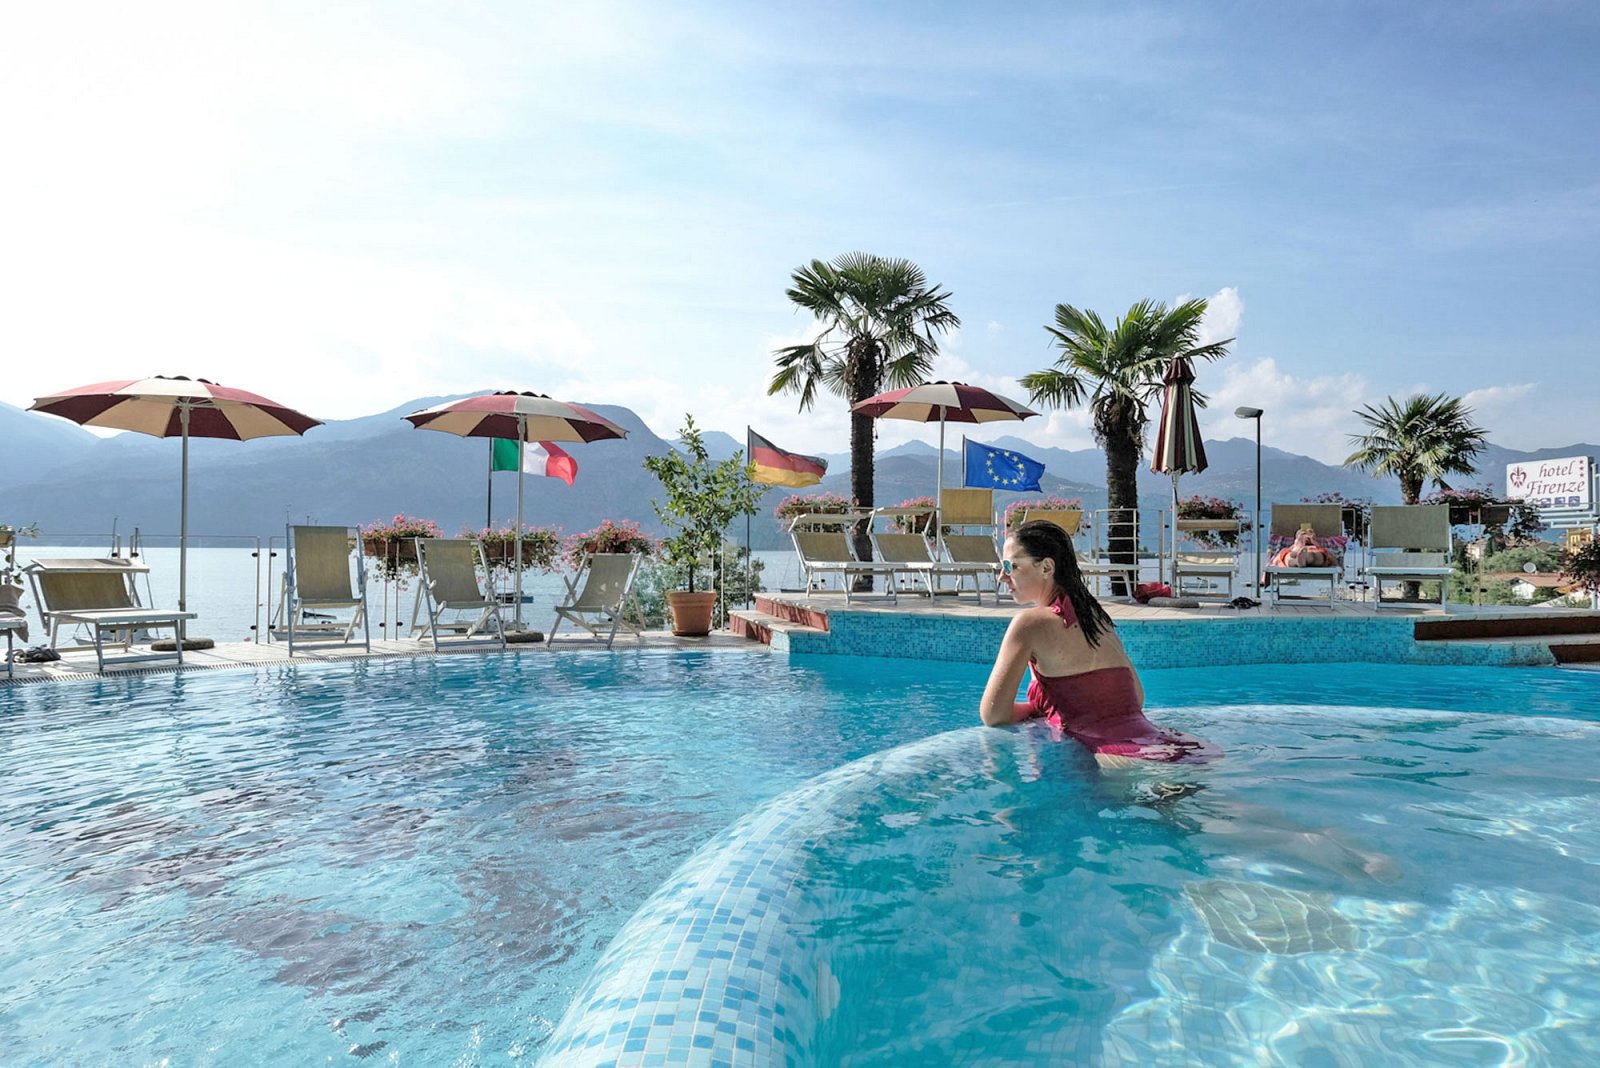 Mädchen entspannt sich im Pool mit Aussicht auf den Gardasee im 3 Sterne Hotel Firenze